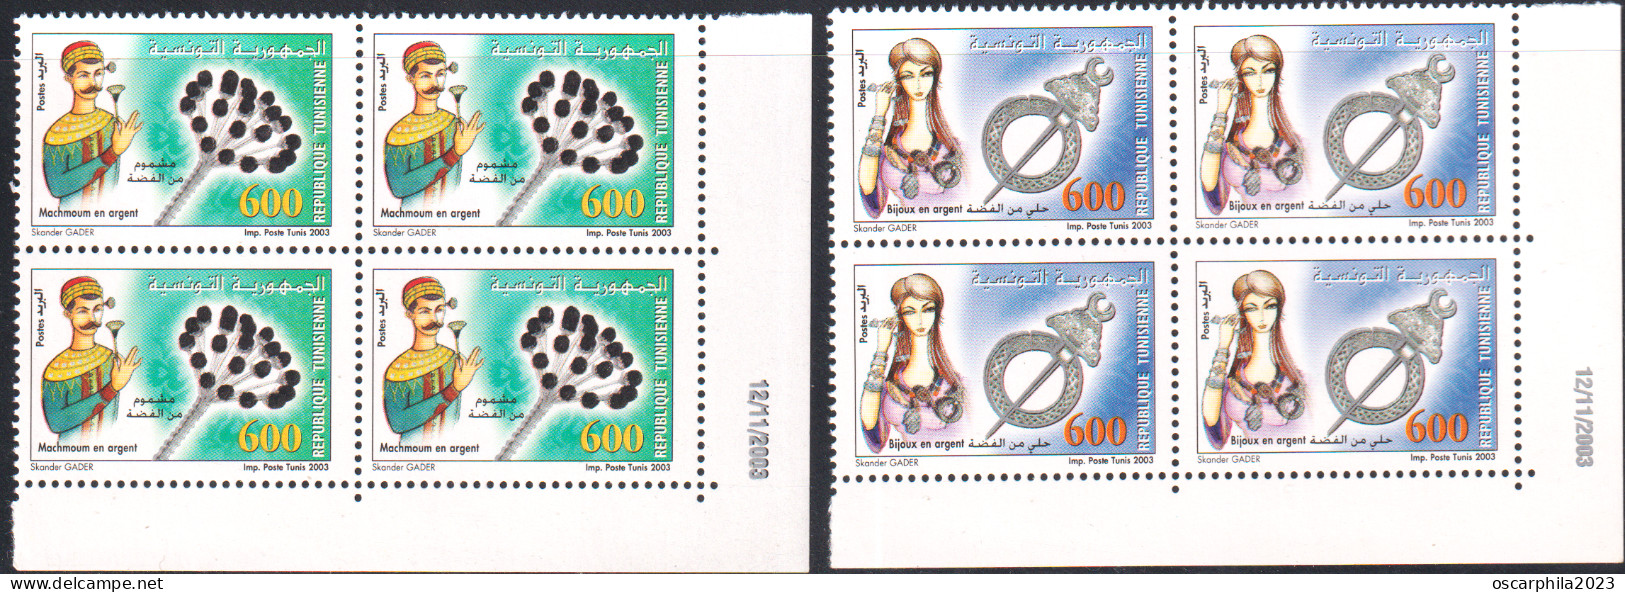 2003-Tunisie/Y&T1504-1505- Produits En Argent : Mechmoum De Fell, Khlel- Série Complète -bloc 4 Coin Daté 8V/ MNH***** - Tunisia